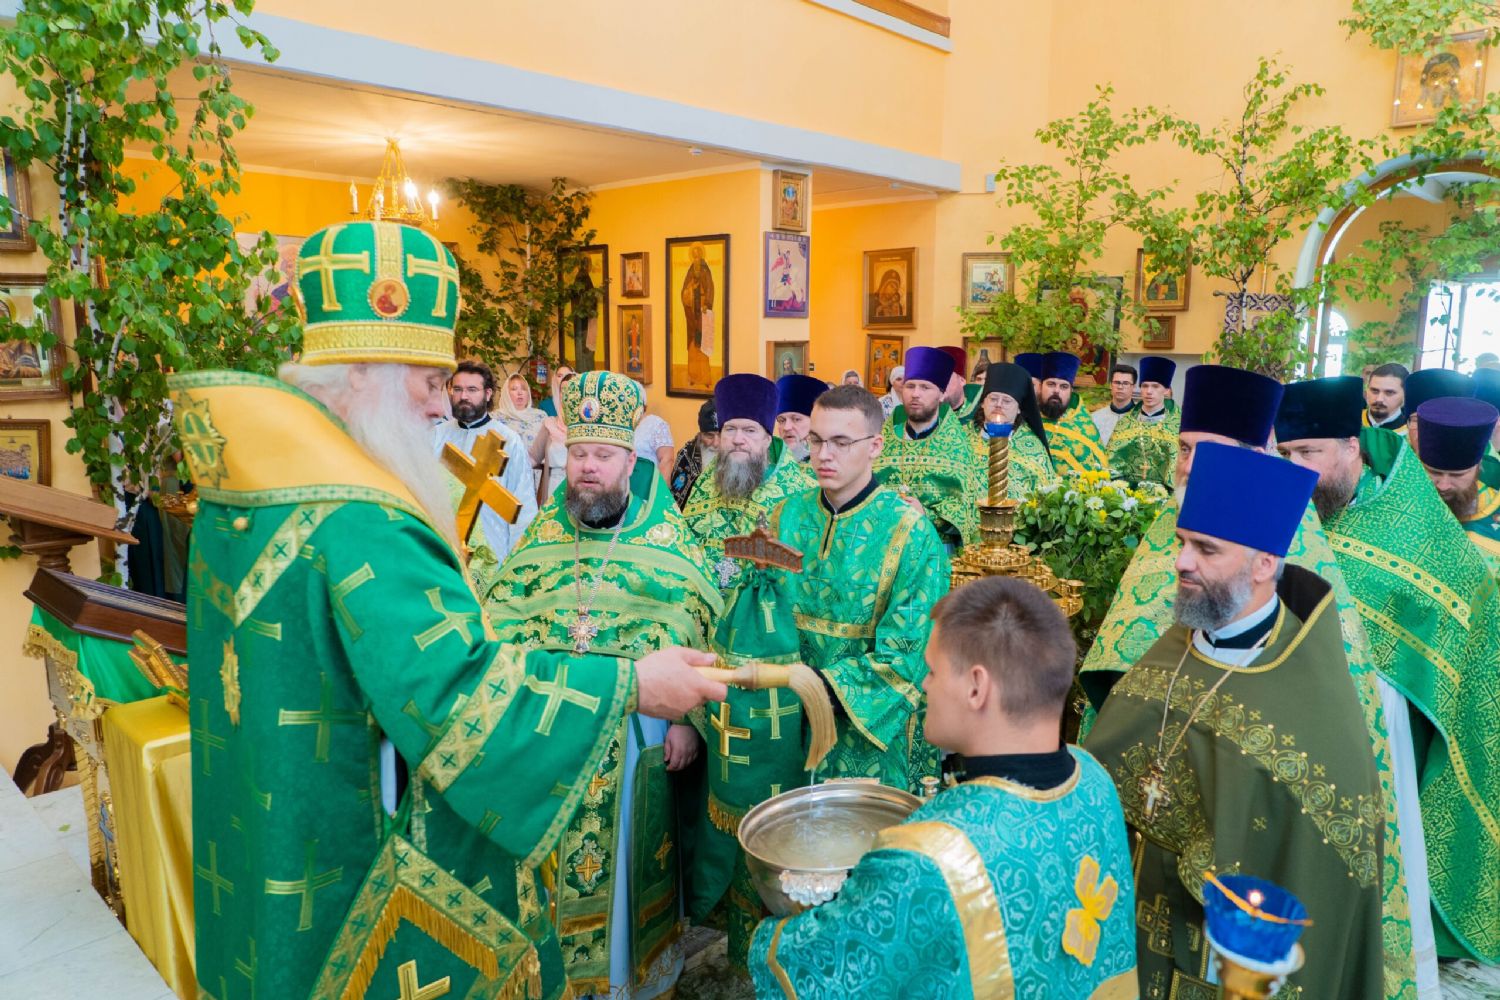 Выпускной день в Барнаульской духовной семинарии